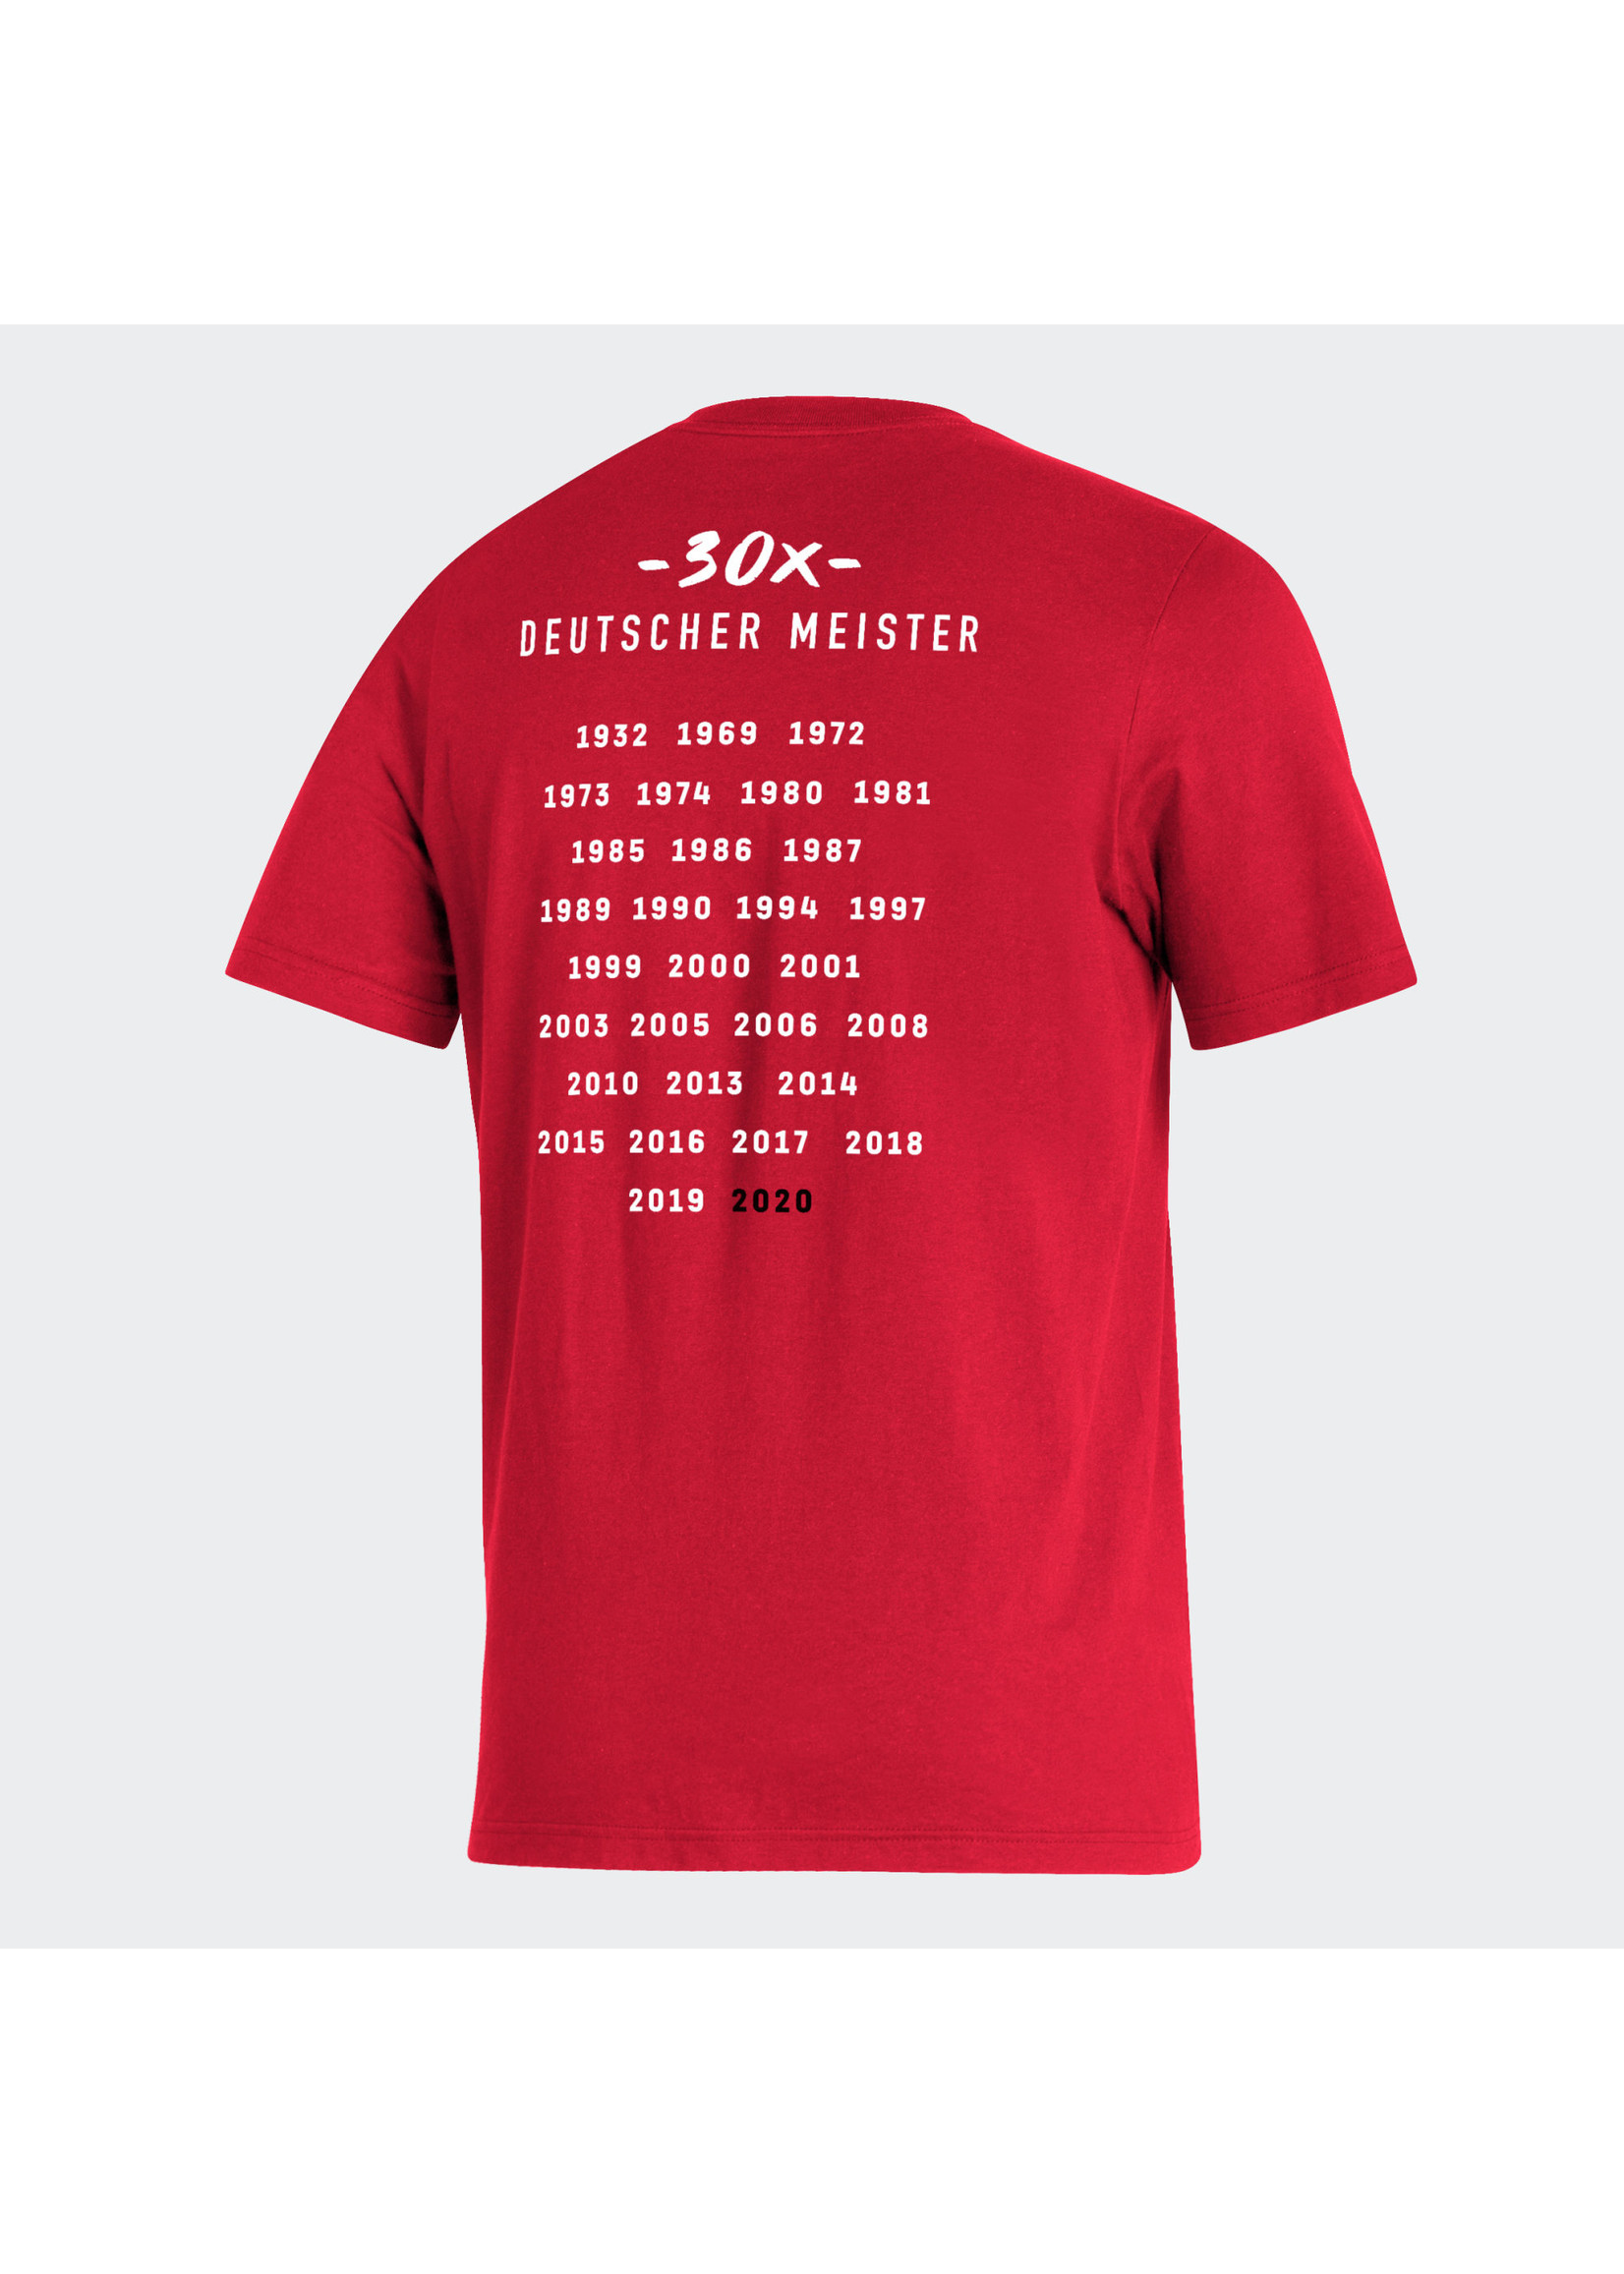 Adidas Bayern Munich T-Shirt - 30 Deutscher Meister